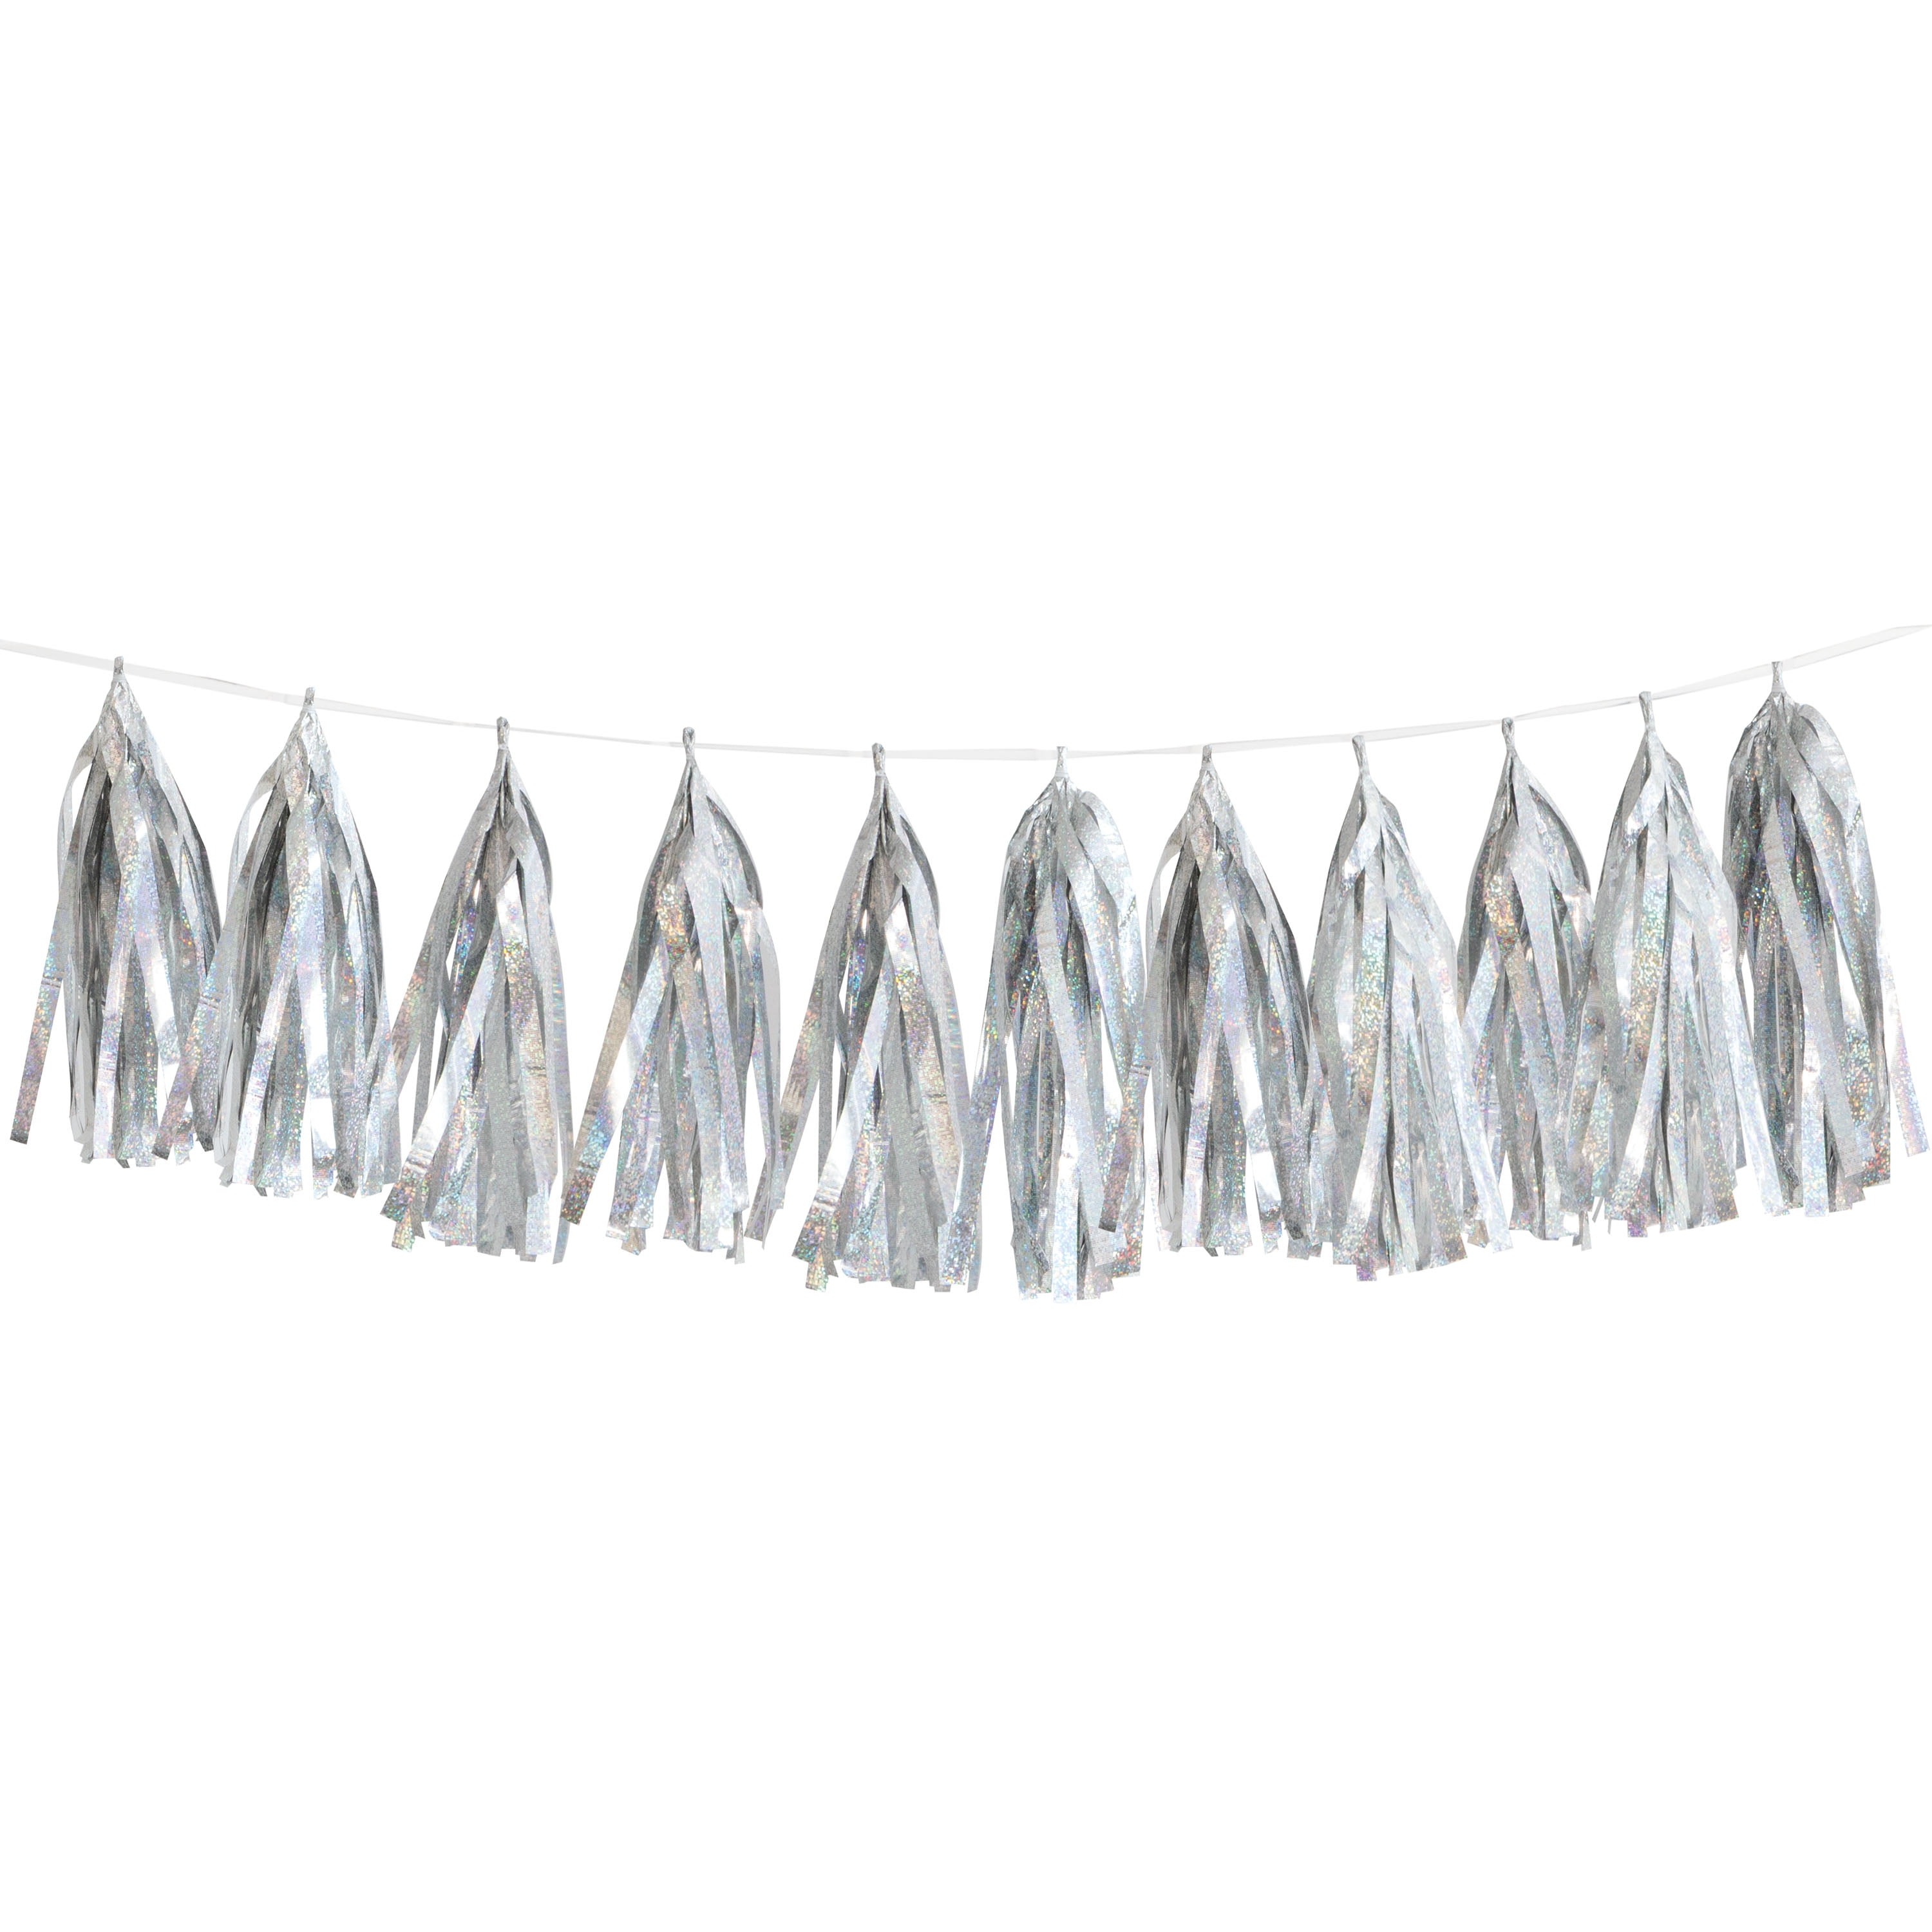 Prismatic Foil Silver Tassel Garland, 9ft